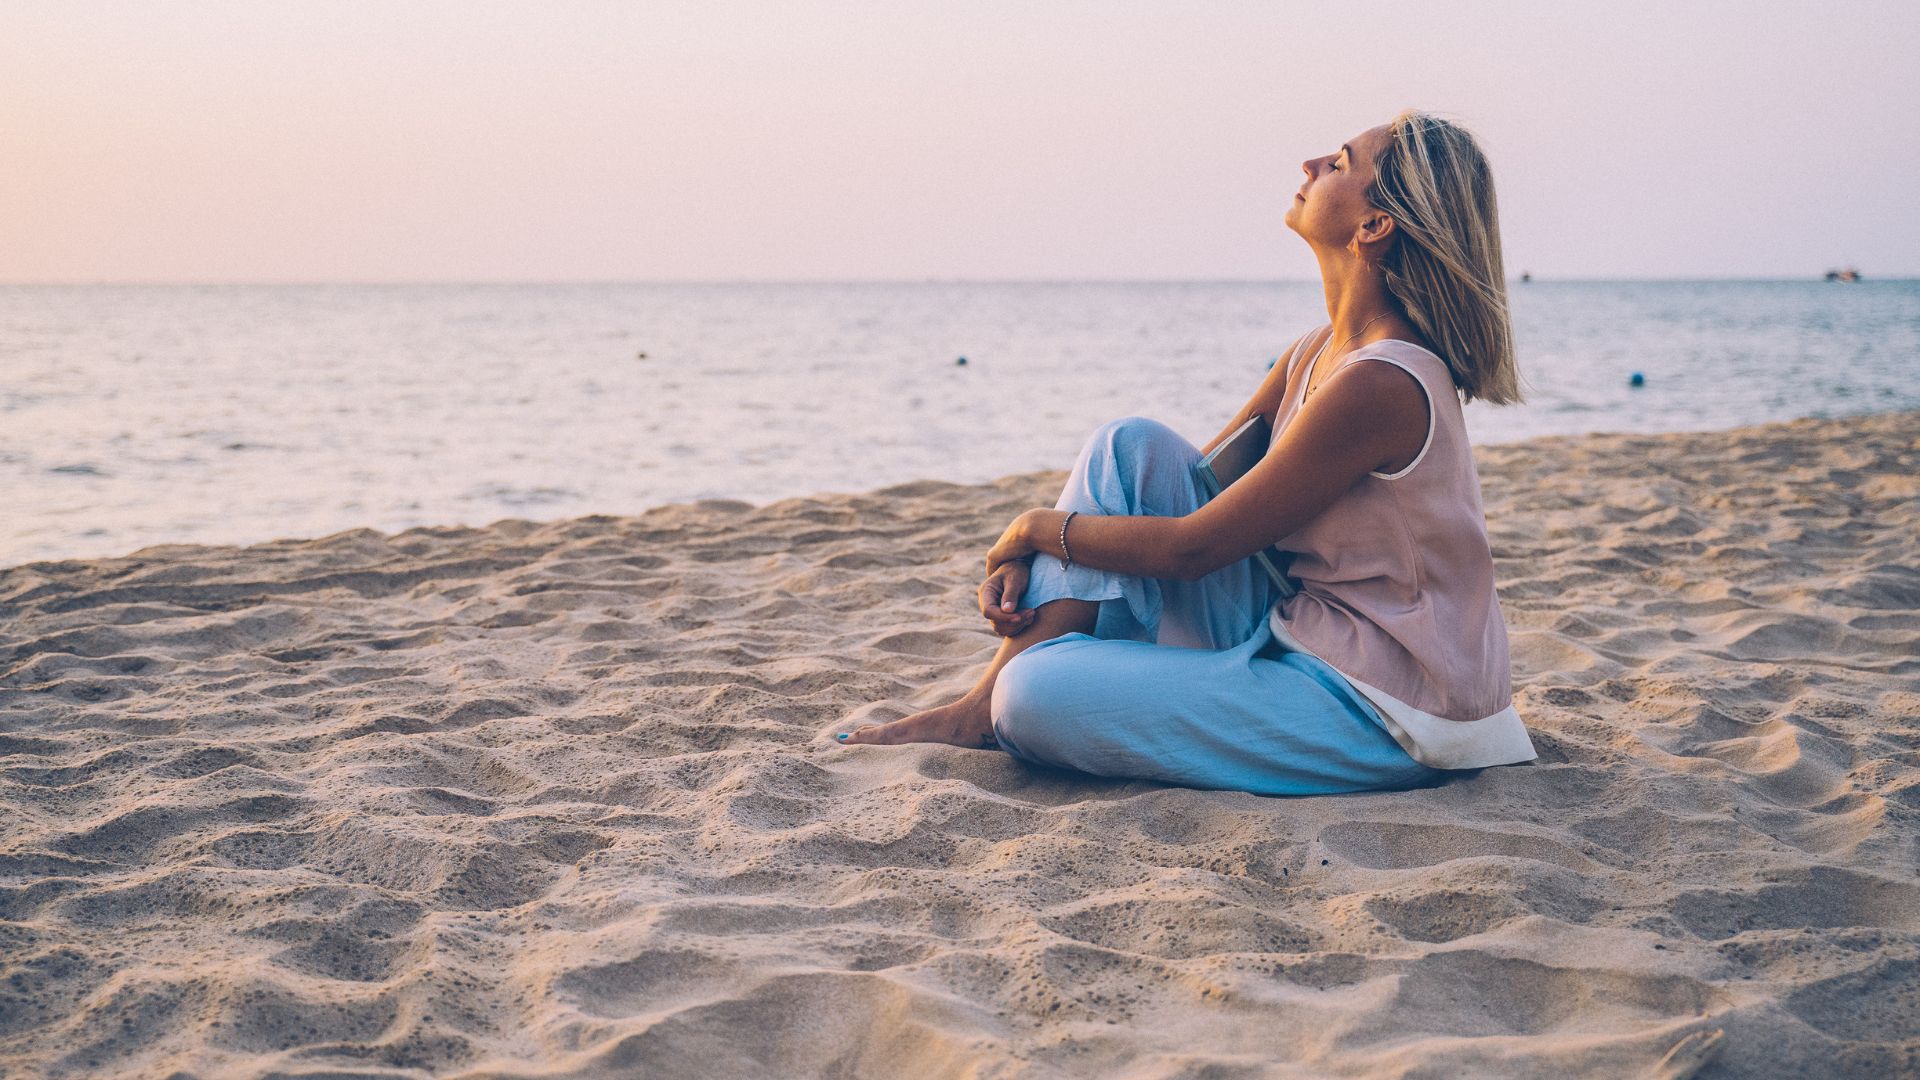 Imagem de uma praia com uma mulher de cabelos curtos sentada sobre a areia. Ela está reflexiva e pensativa por tudo que já superou na vida.